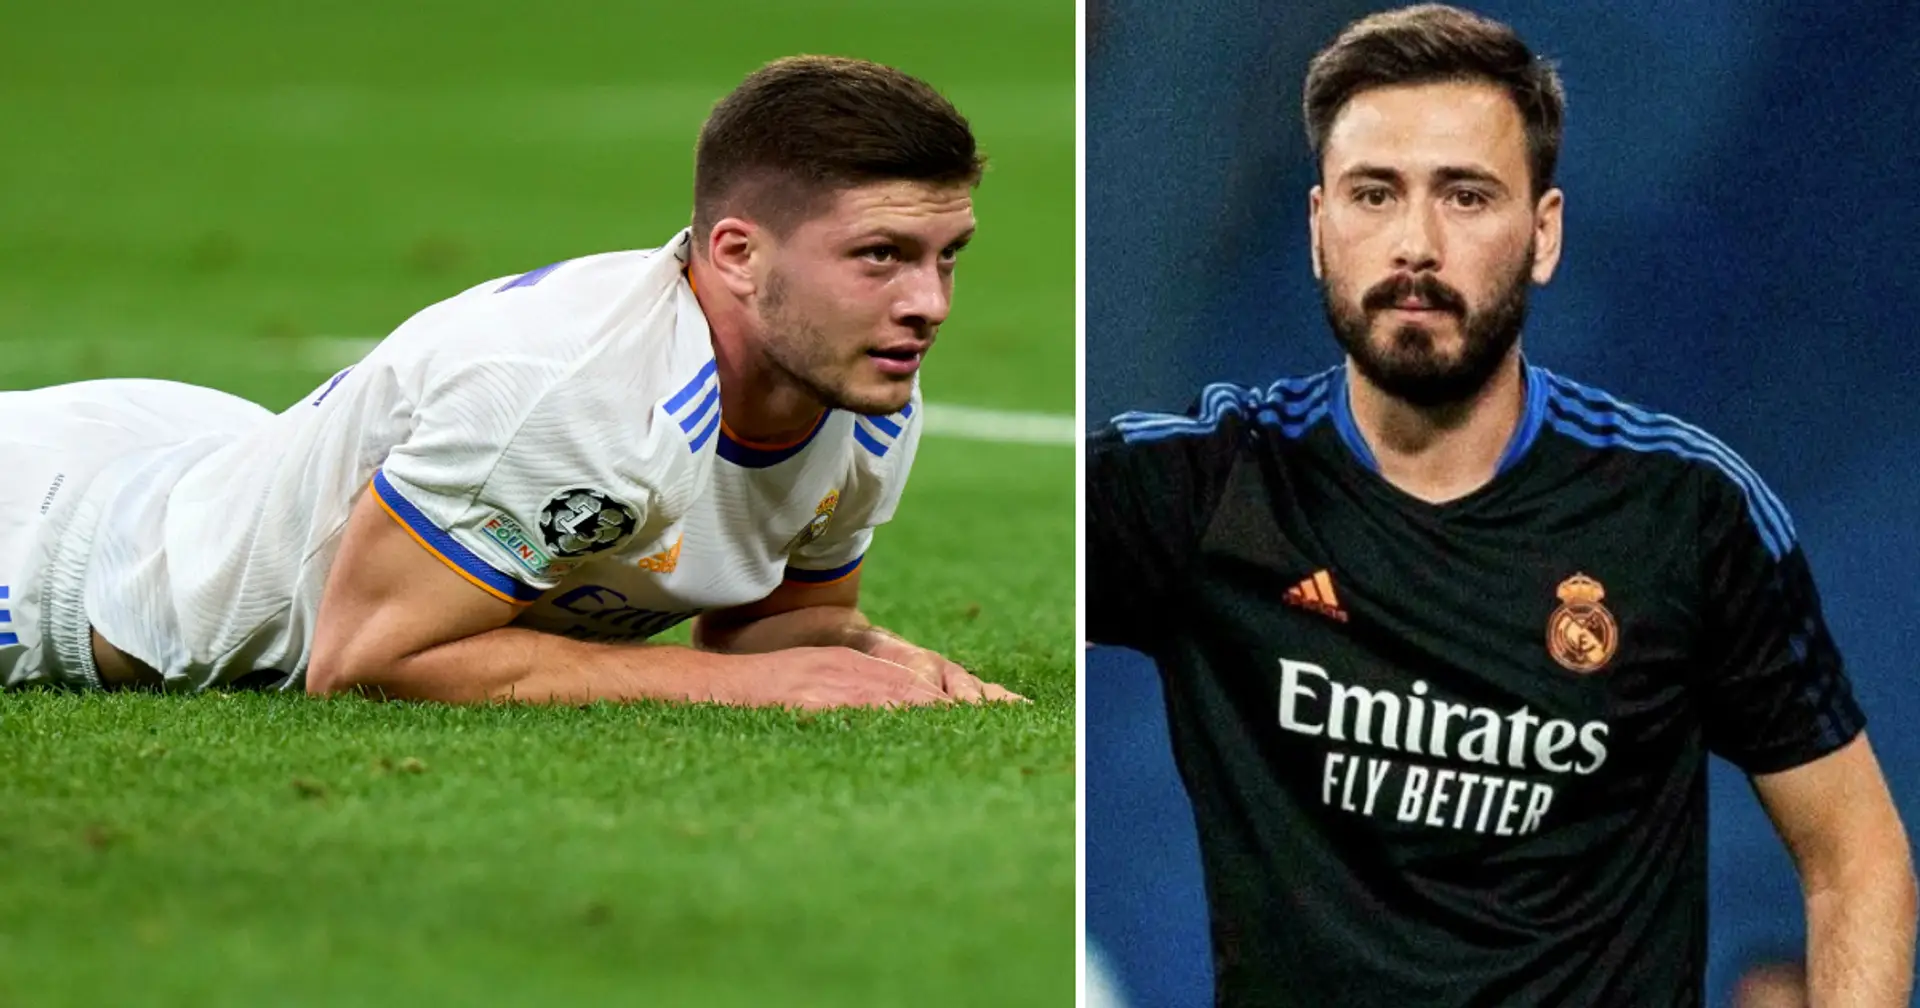 2 jugadores del Real Madrid en duda para el partido vs Celta de Vigo por lesiones